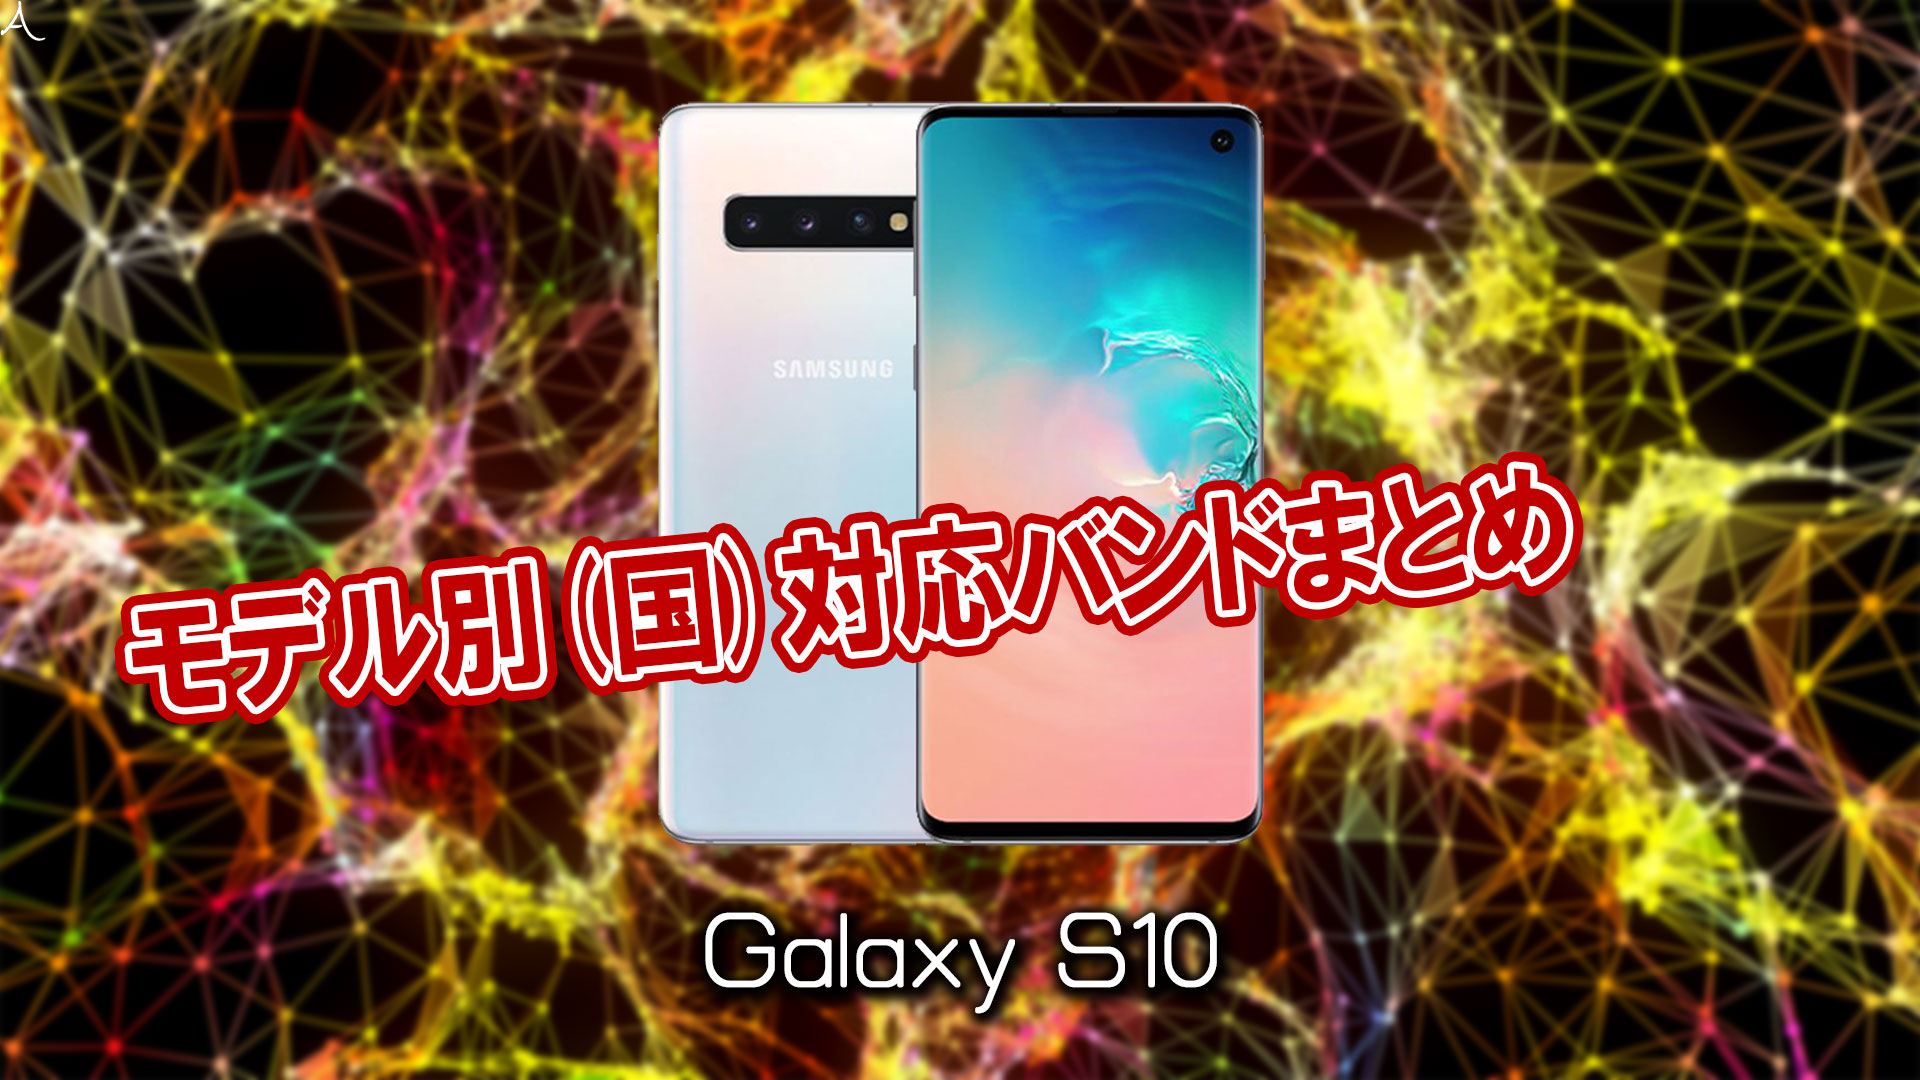 「Galaxy S10」の4G/LTE対応バンドまとめ